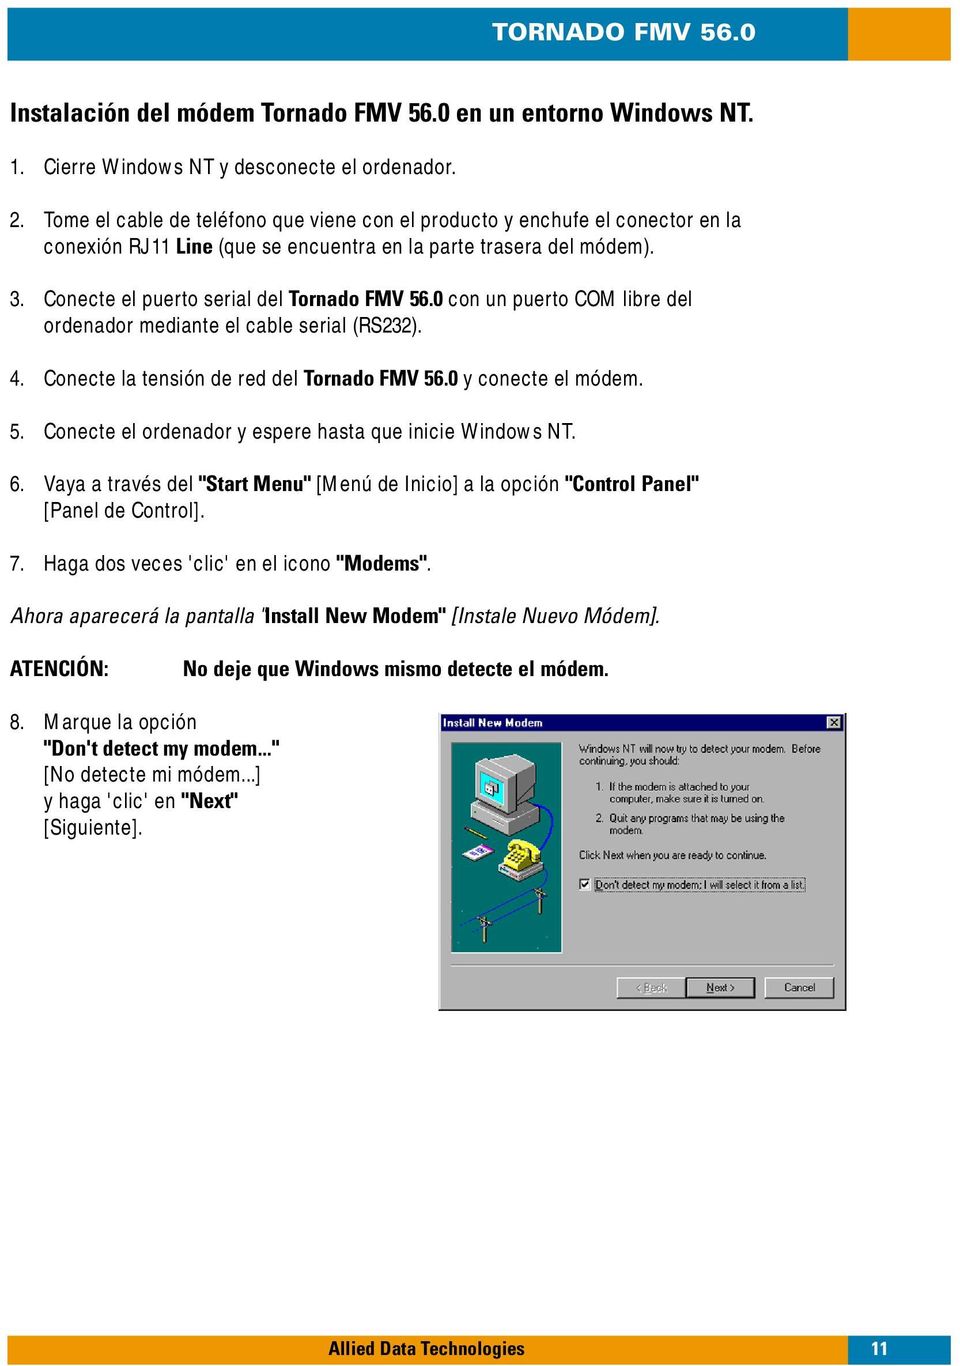 0 con un puerto COM libre del ordenador mediante el cable serial (RS232). 4. Conecte la tensión de red del Tornado FMV 56.0 y conecte el módem. 5. Conecte el ordenador y espere hasta que inicie Windows NT.